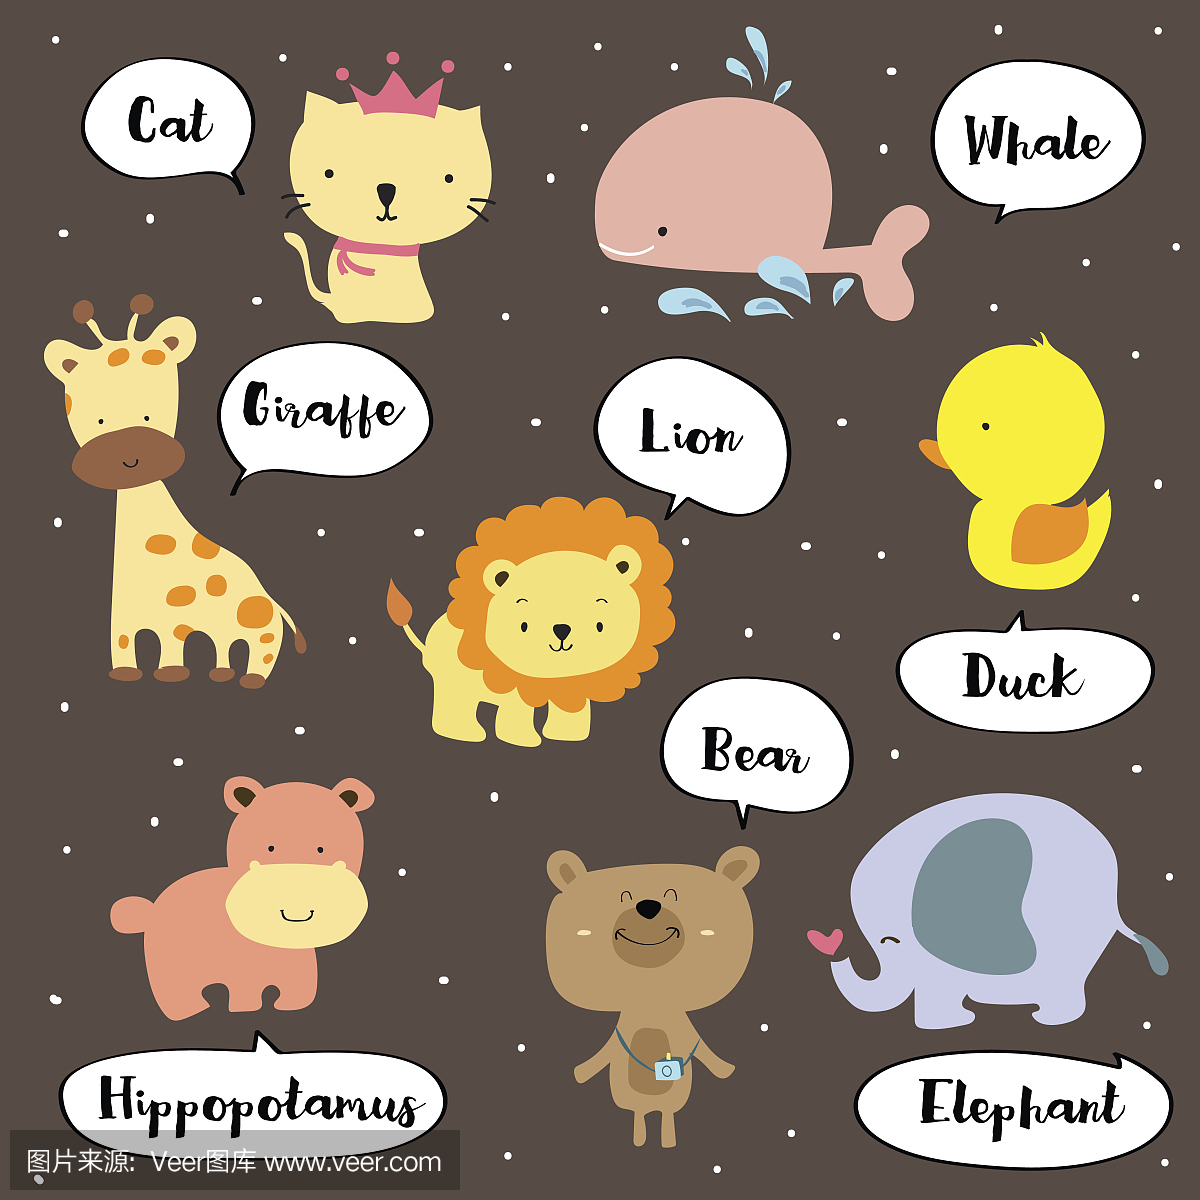 可爱的词汇与猫,长颈鹿,河马,熊,狮子,鲸鱼,大象